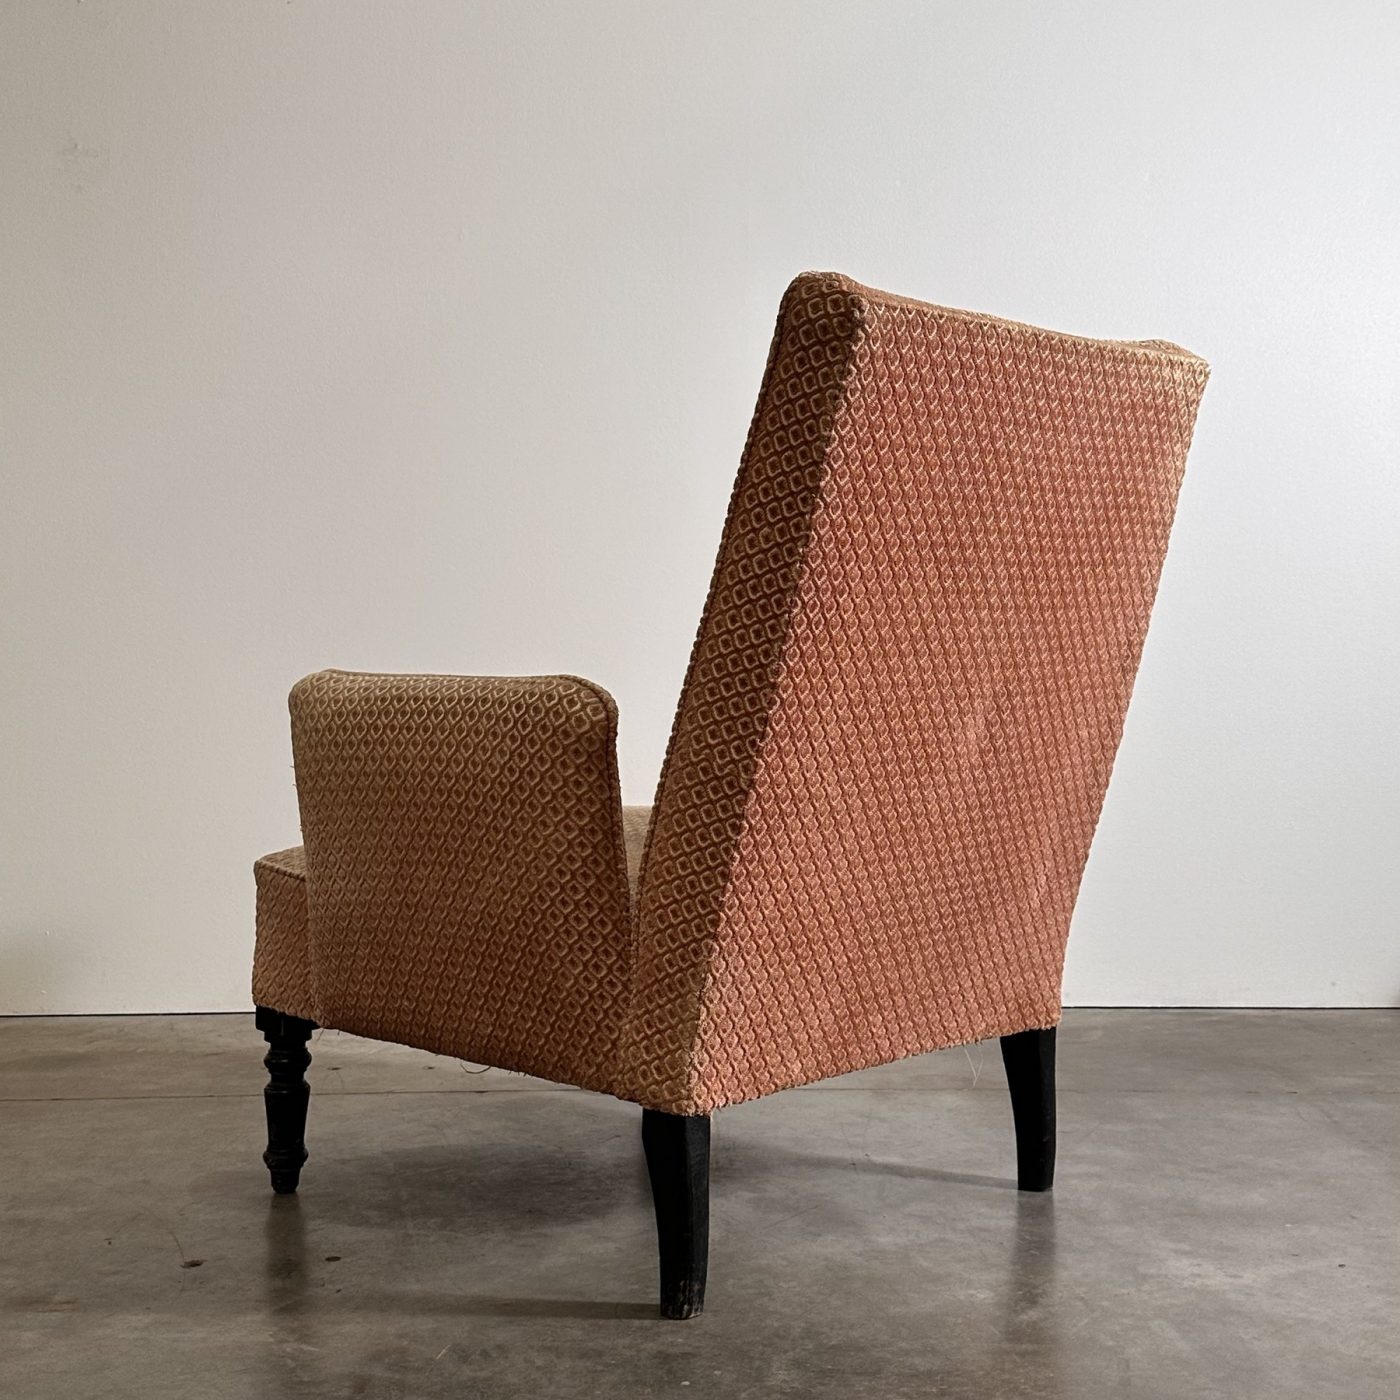 objet-vagabond-napoleon3-armchairs0002